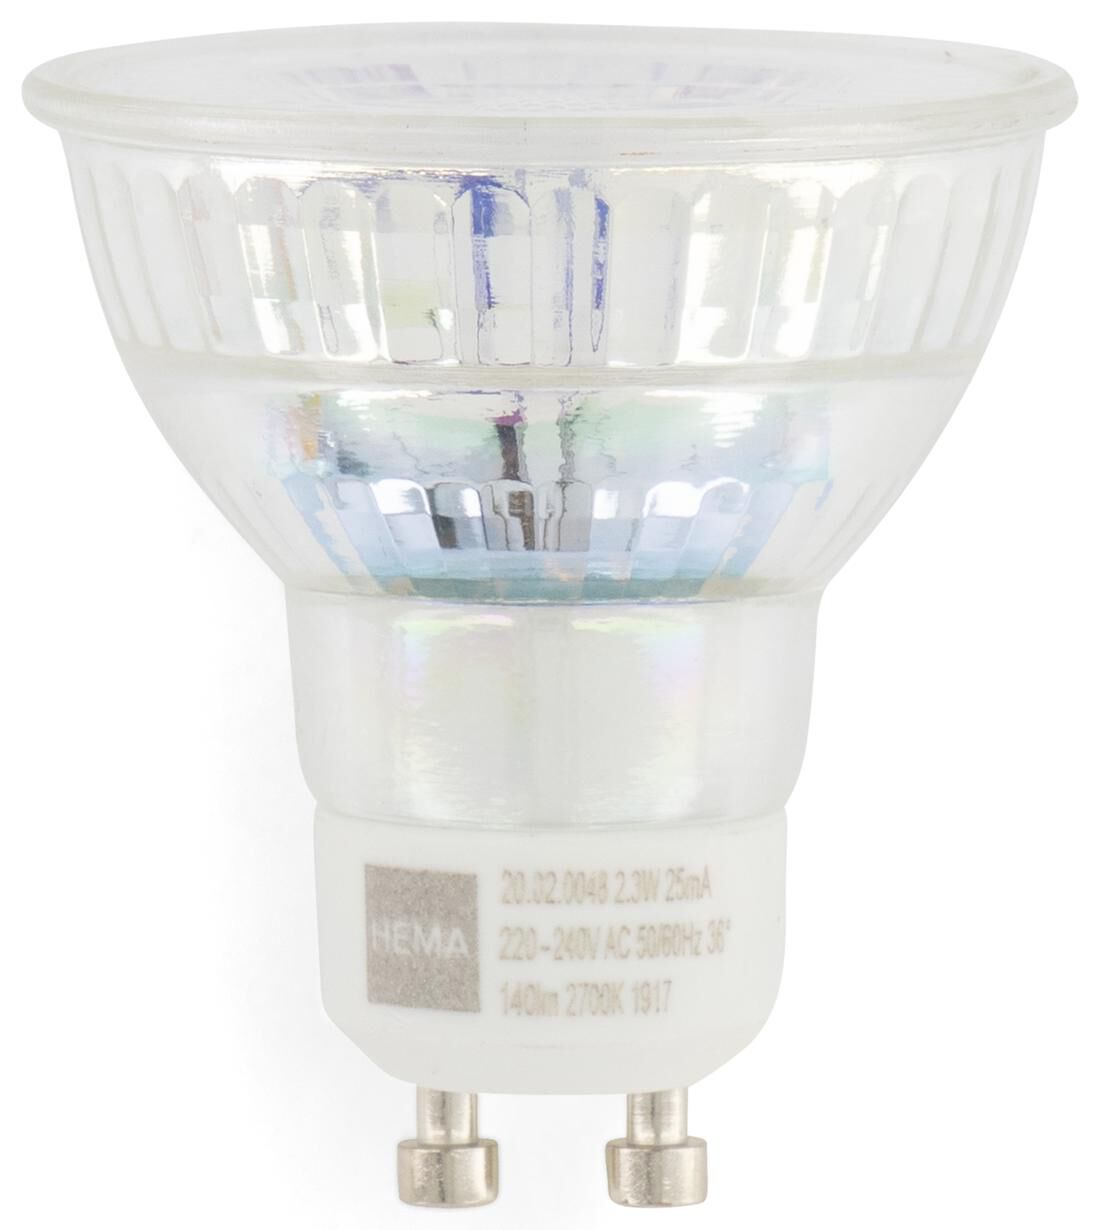 Troosteloos Blind sector HEMA LED Lamp 25W - 140 Lm - Spot - Helder (transparant) ... - Makeover.nl